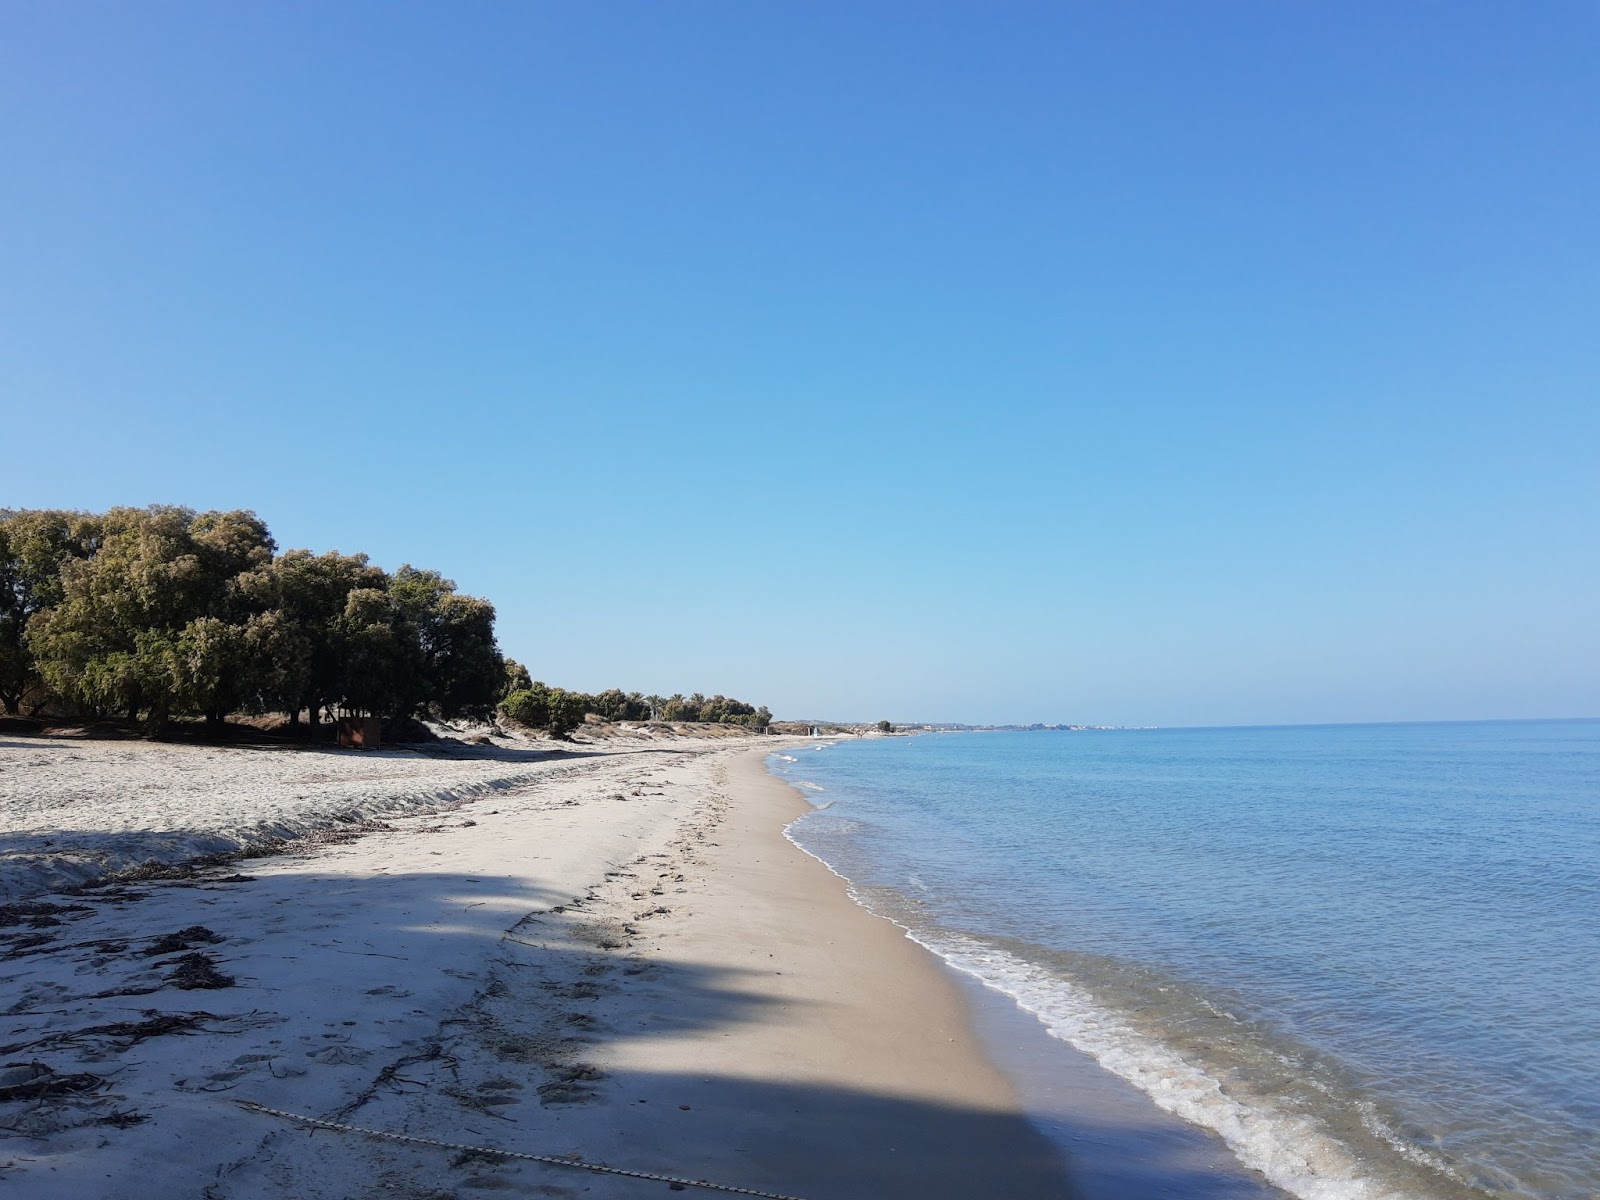 Zdjęcie Marmari beach z powierzchnią jasny piasek